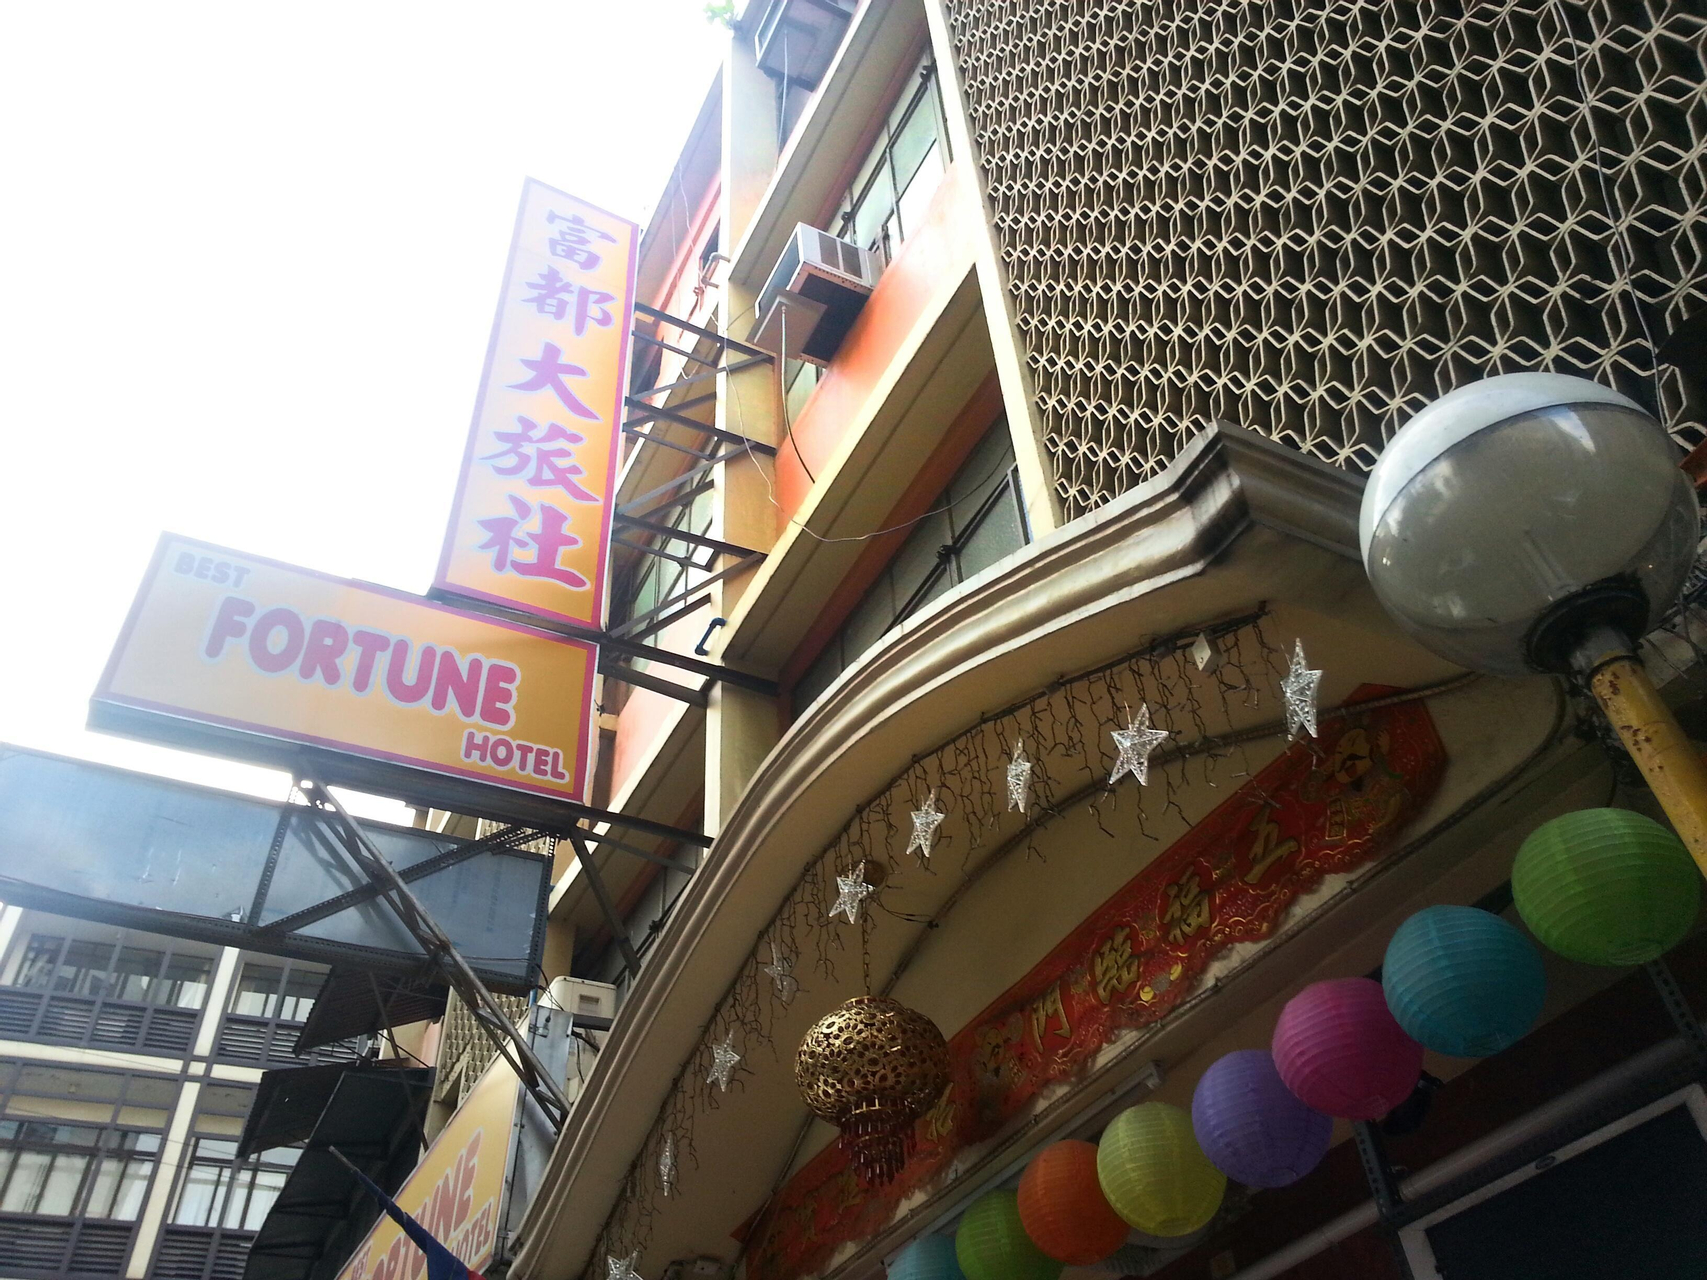 Public Area 1, Best Fortune Hotel, Manila